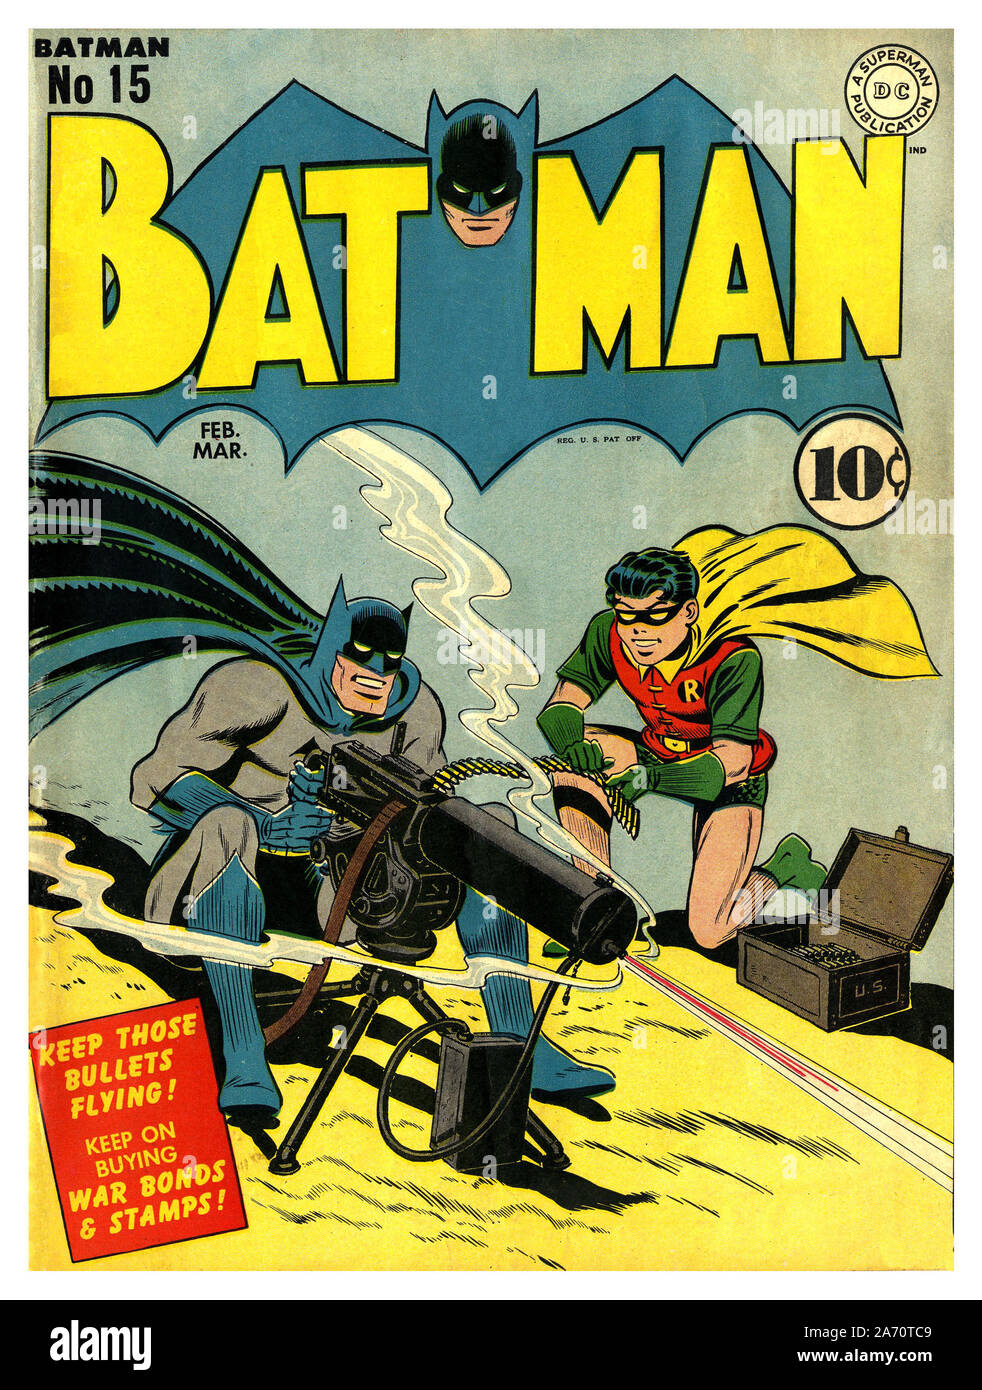 Vintage Comic 1940's American WW2 BATMAN PROPAGANDA CÓMICO no15 Ficticio  Super Hero Batman y Robin ilustró disparar una ametralladora 'mantener esas  balas volando seguir comprando bonos de guerra y sellos' 10c precio